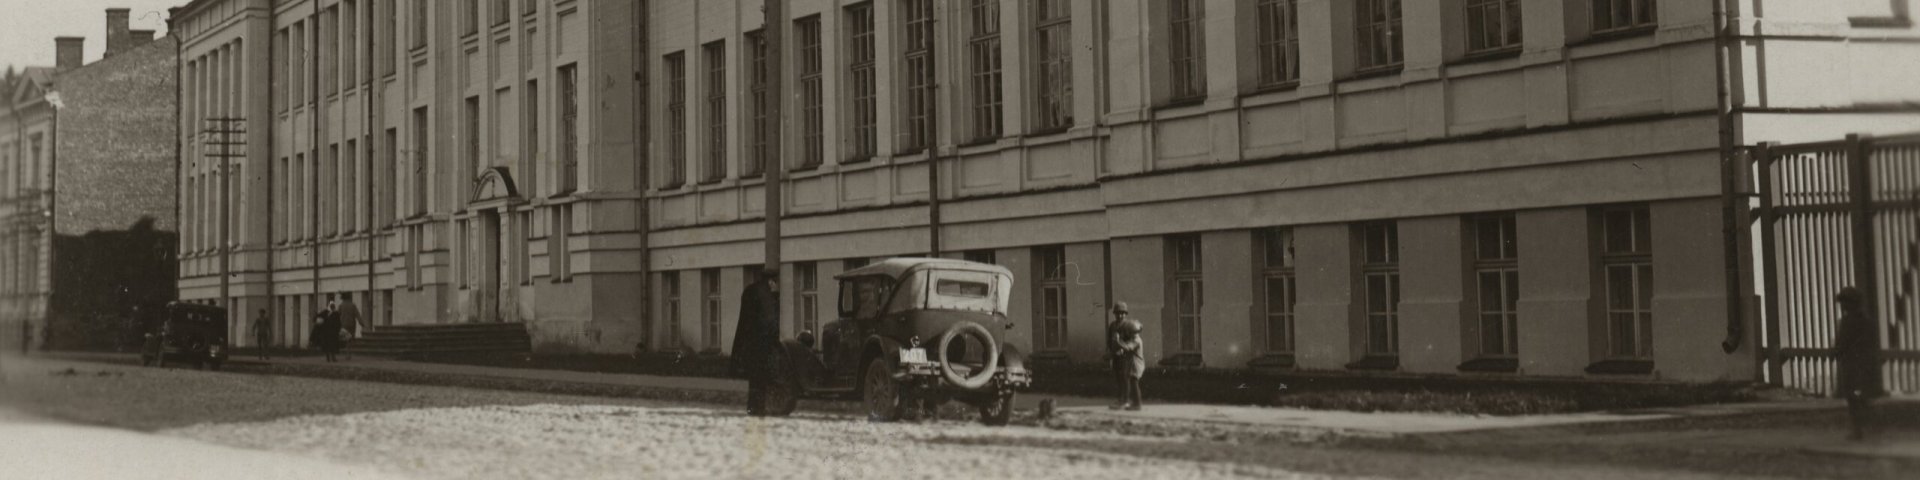 Tartu ülikooli õppehoone Aia (Vanemuise) t. 46 1930-ndatel